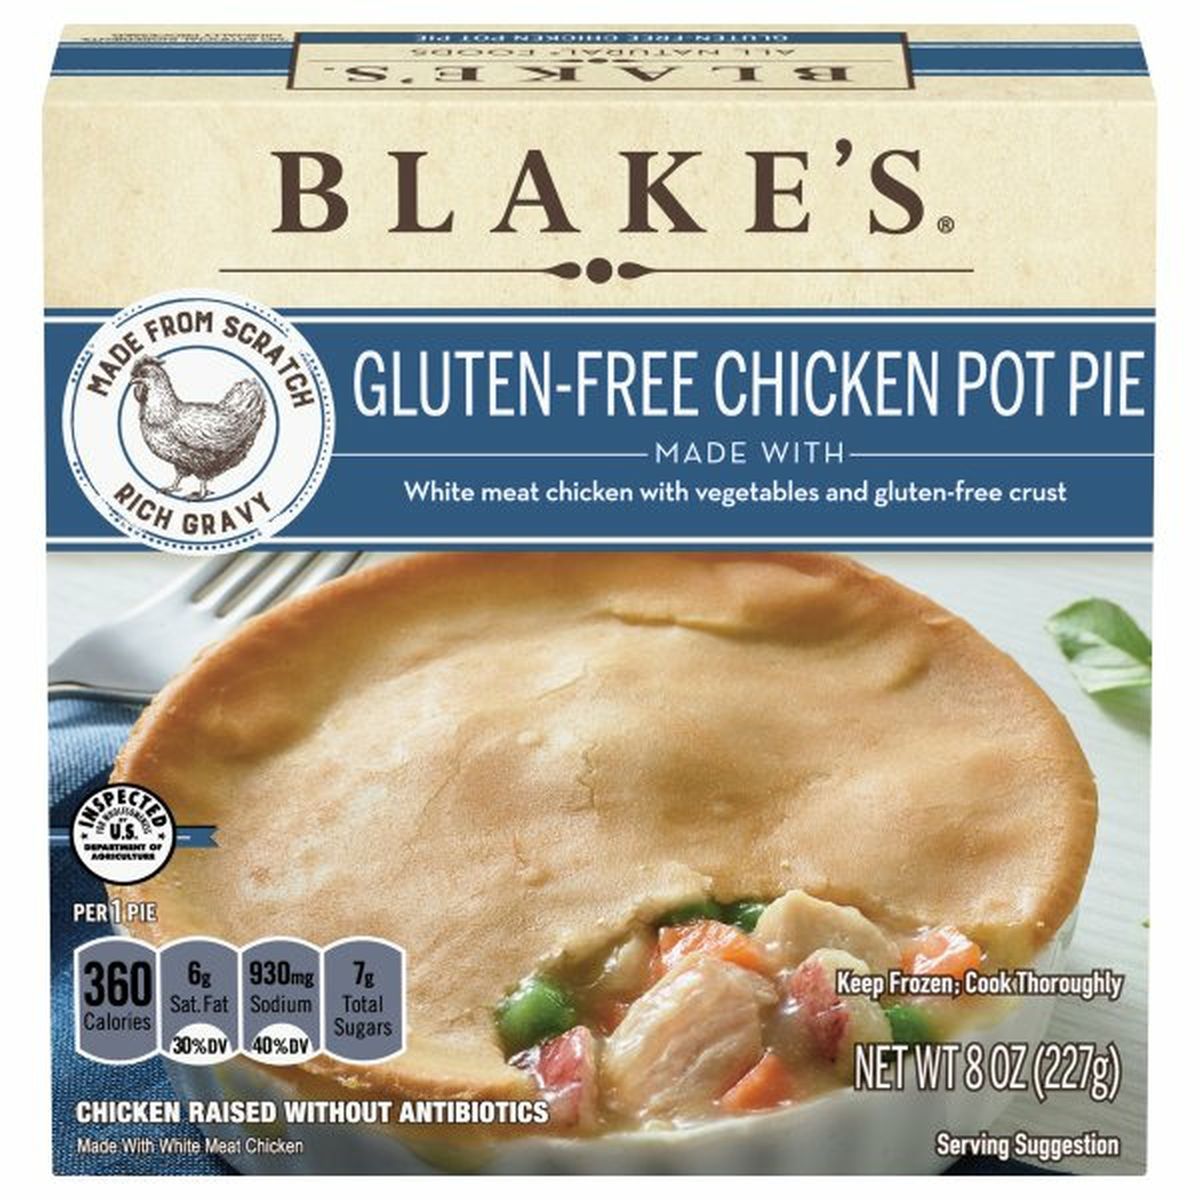 Calories in Blake's Chicken Pot Pie, Gluten-Free